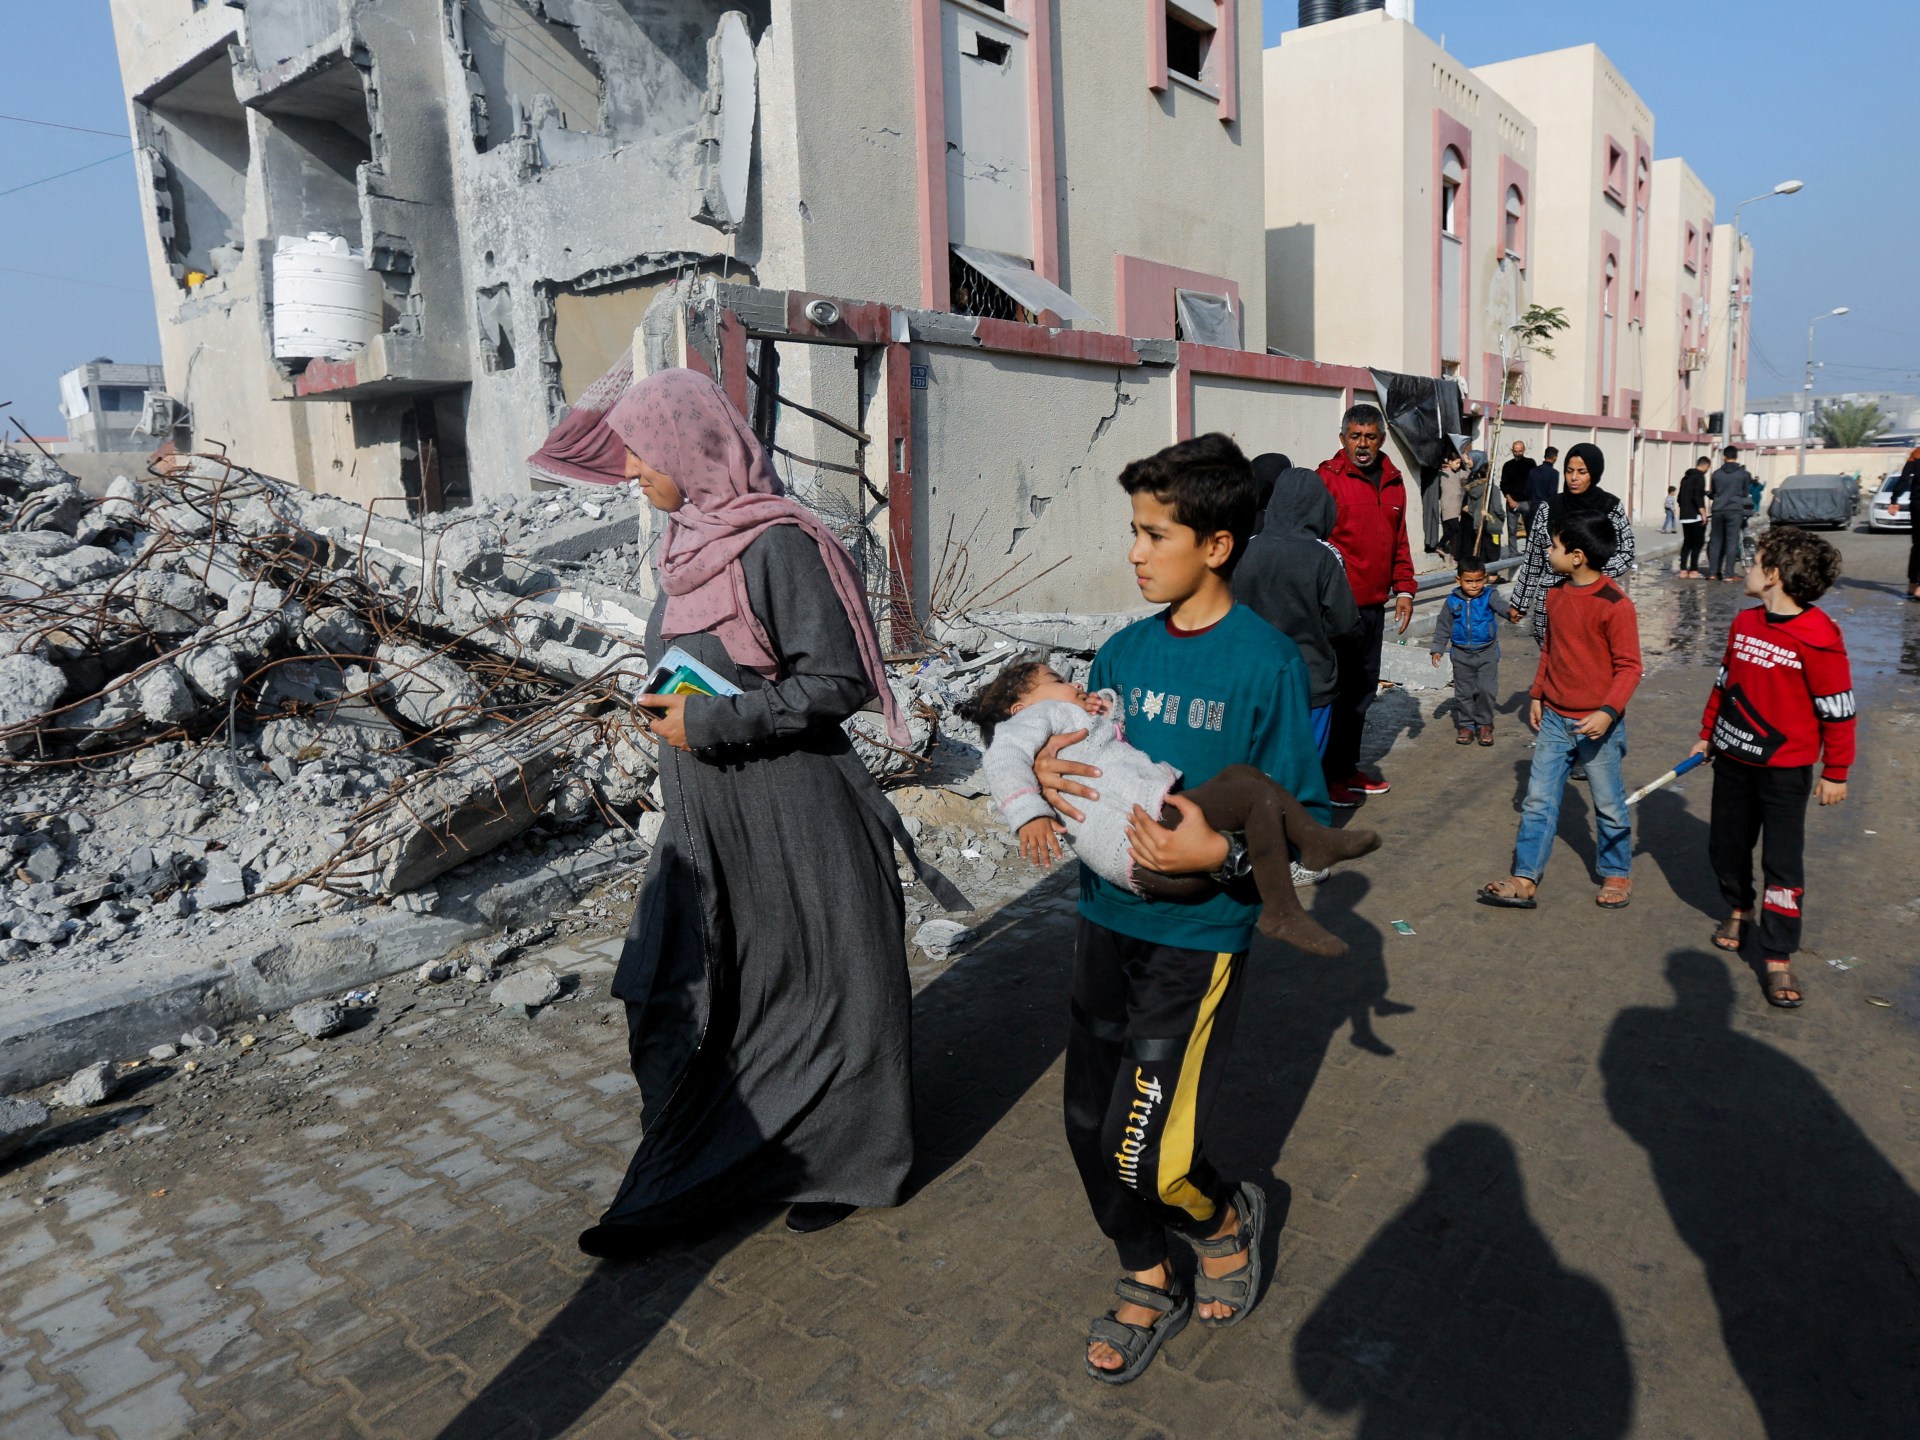 L’accord de cessez-le-feu entre Gaza et Israël n’est toujours pas conclu, déclare un haut responsable du Hamas |  Guerre d’Israël contre Gaza Actualités